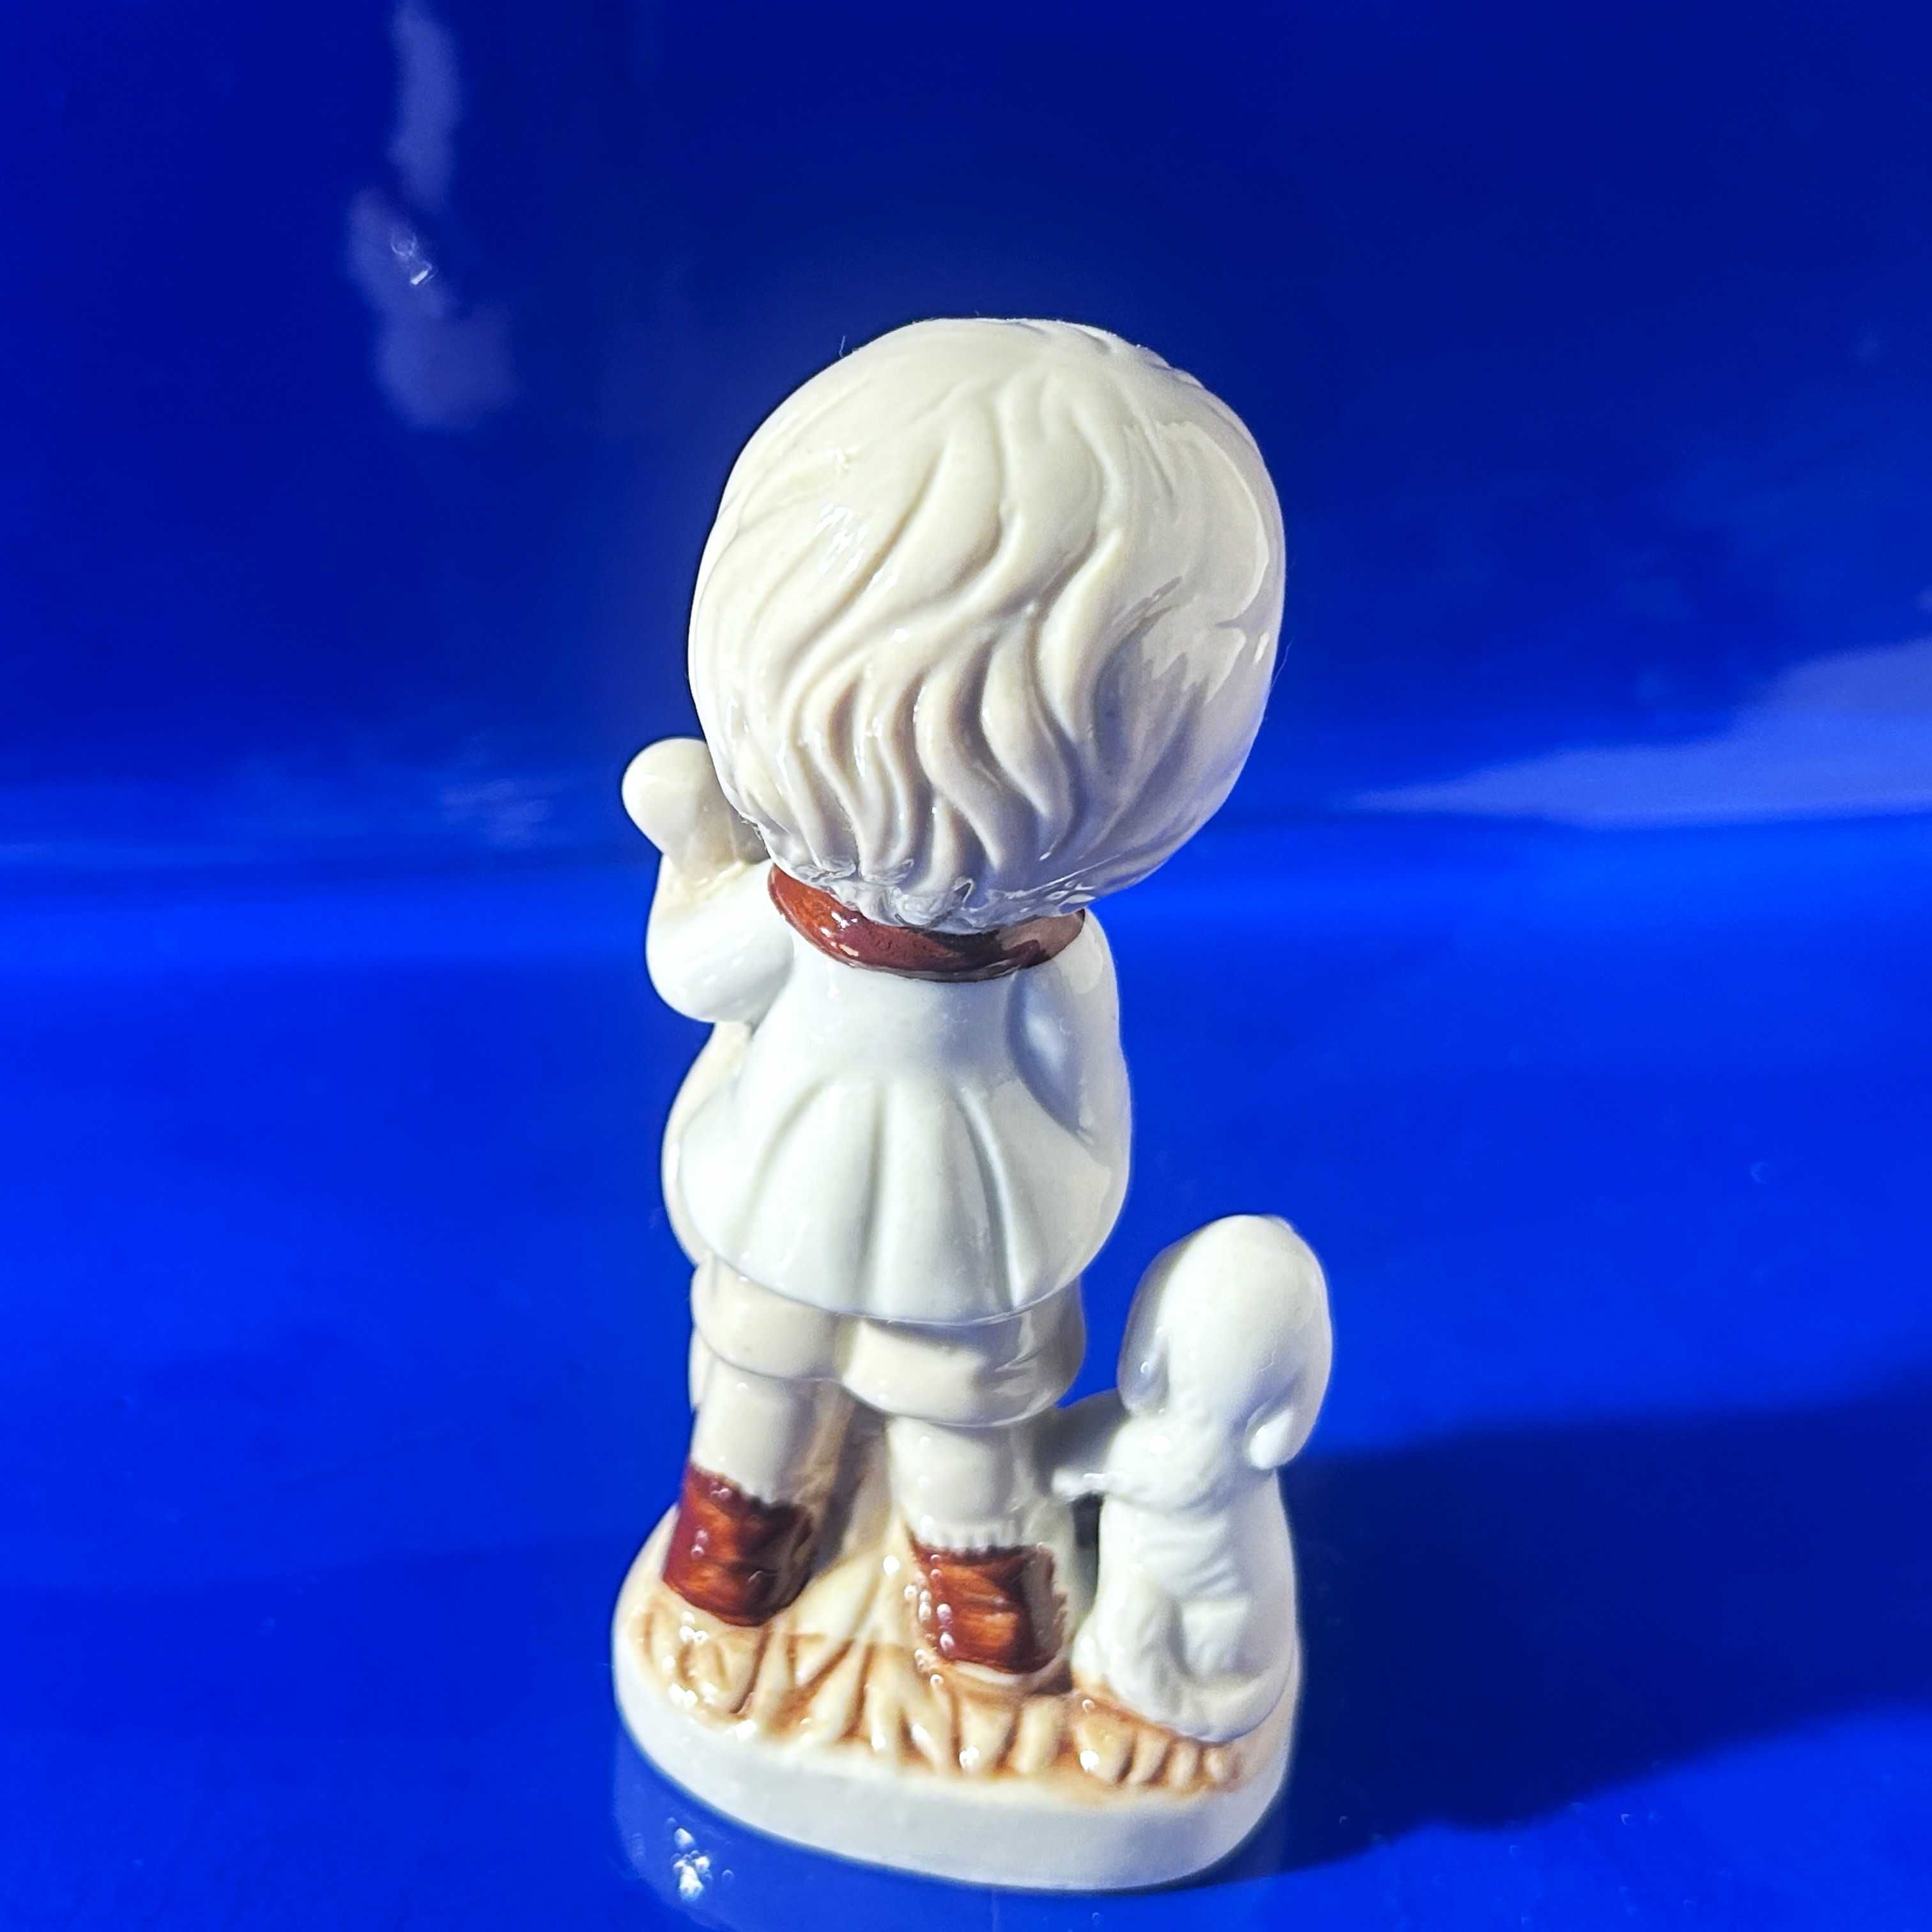 Figurka, chłopiec z wiolonczelą i pieskiem. Porcelana zdobiona